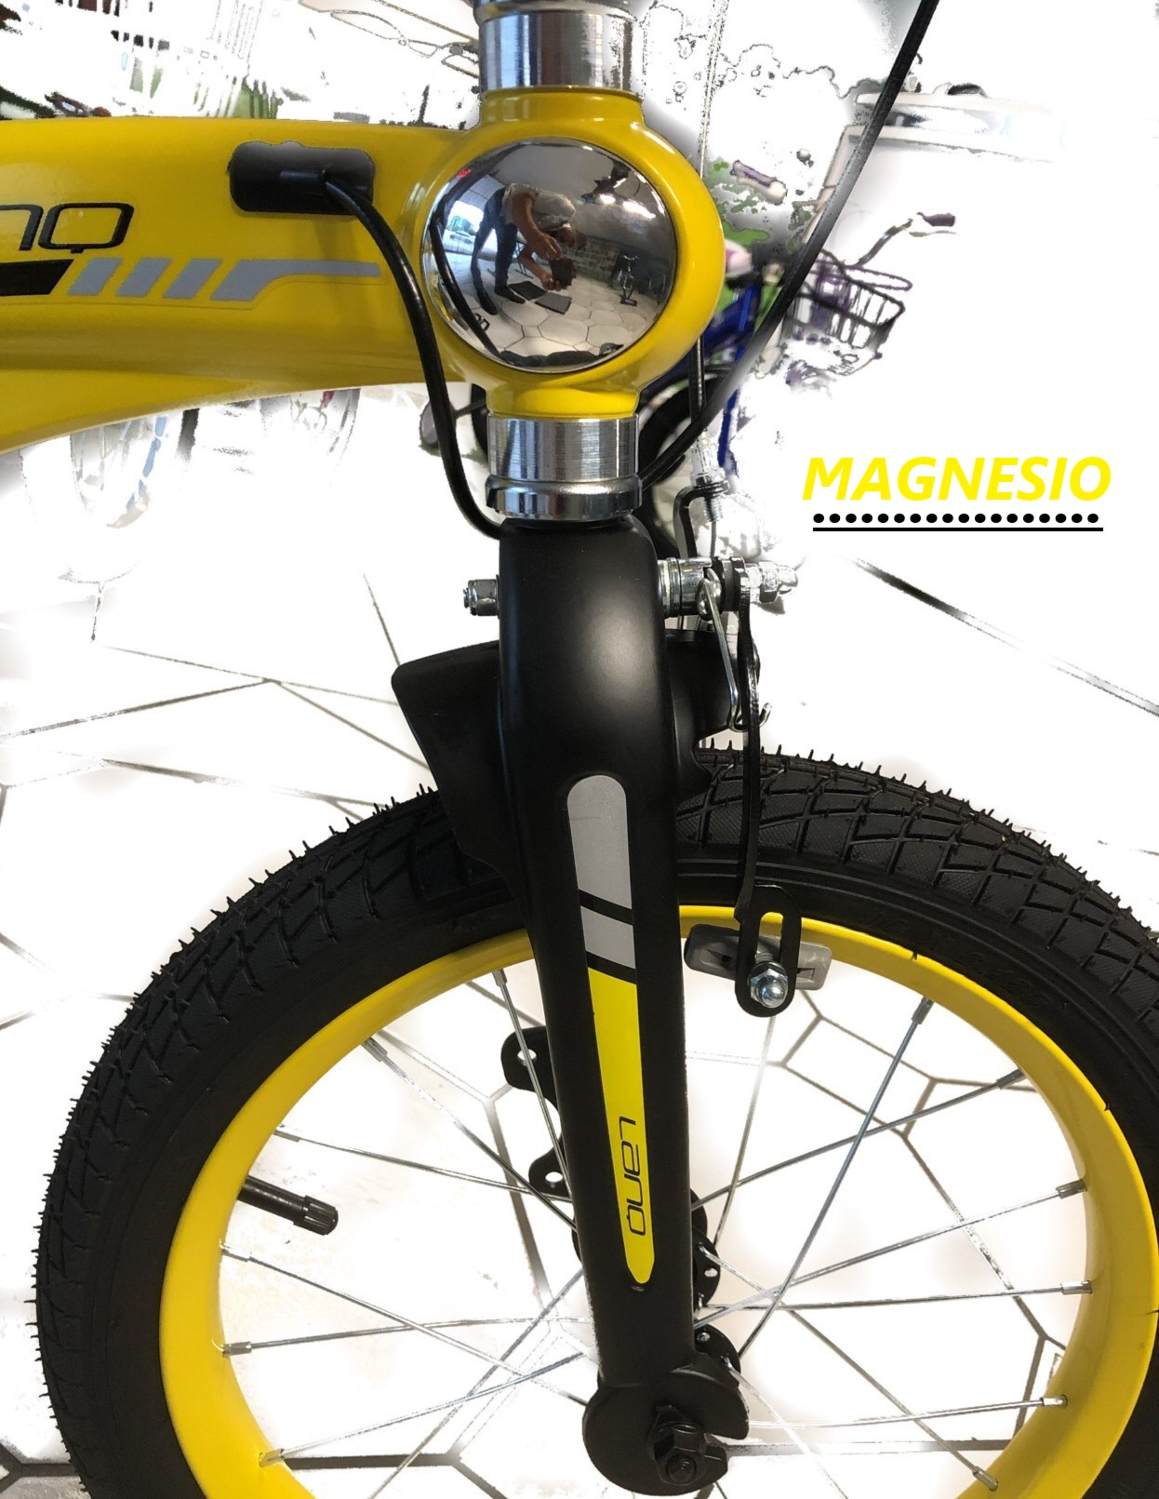 Bicicleta Infantil Lanq Ligera Clasic Super De Magnesio Niño R16